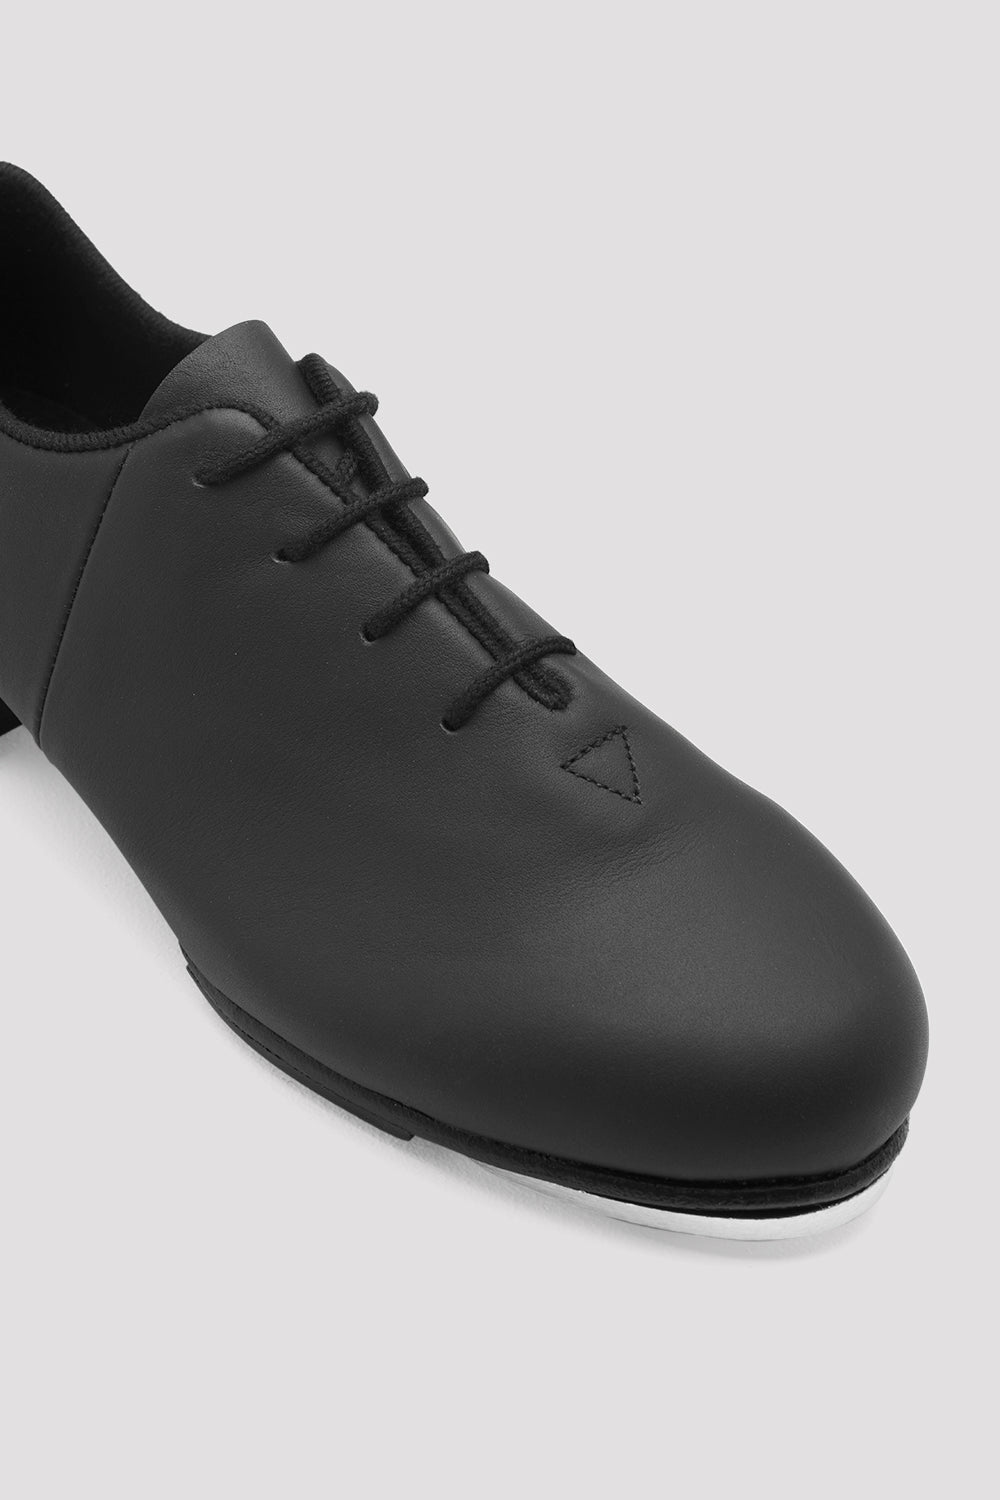 Mens Tap-Flex Leather Tap Shoes, Black – BLOCH Dance US